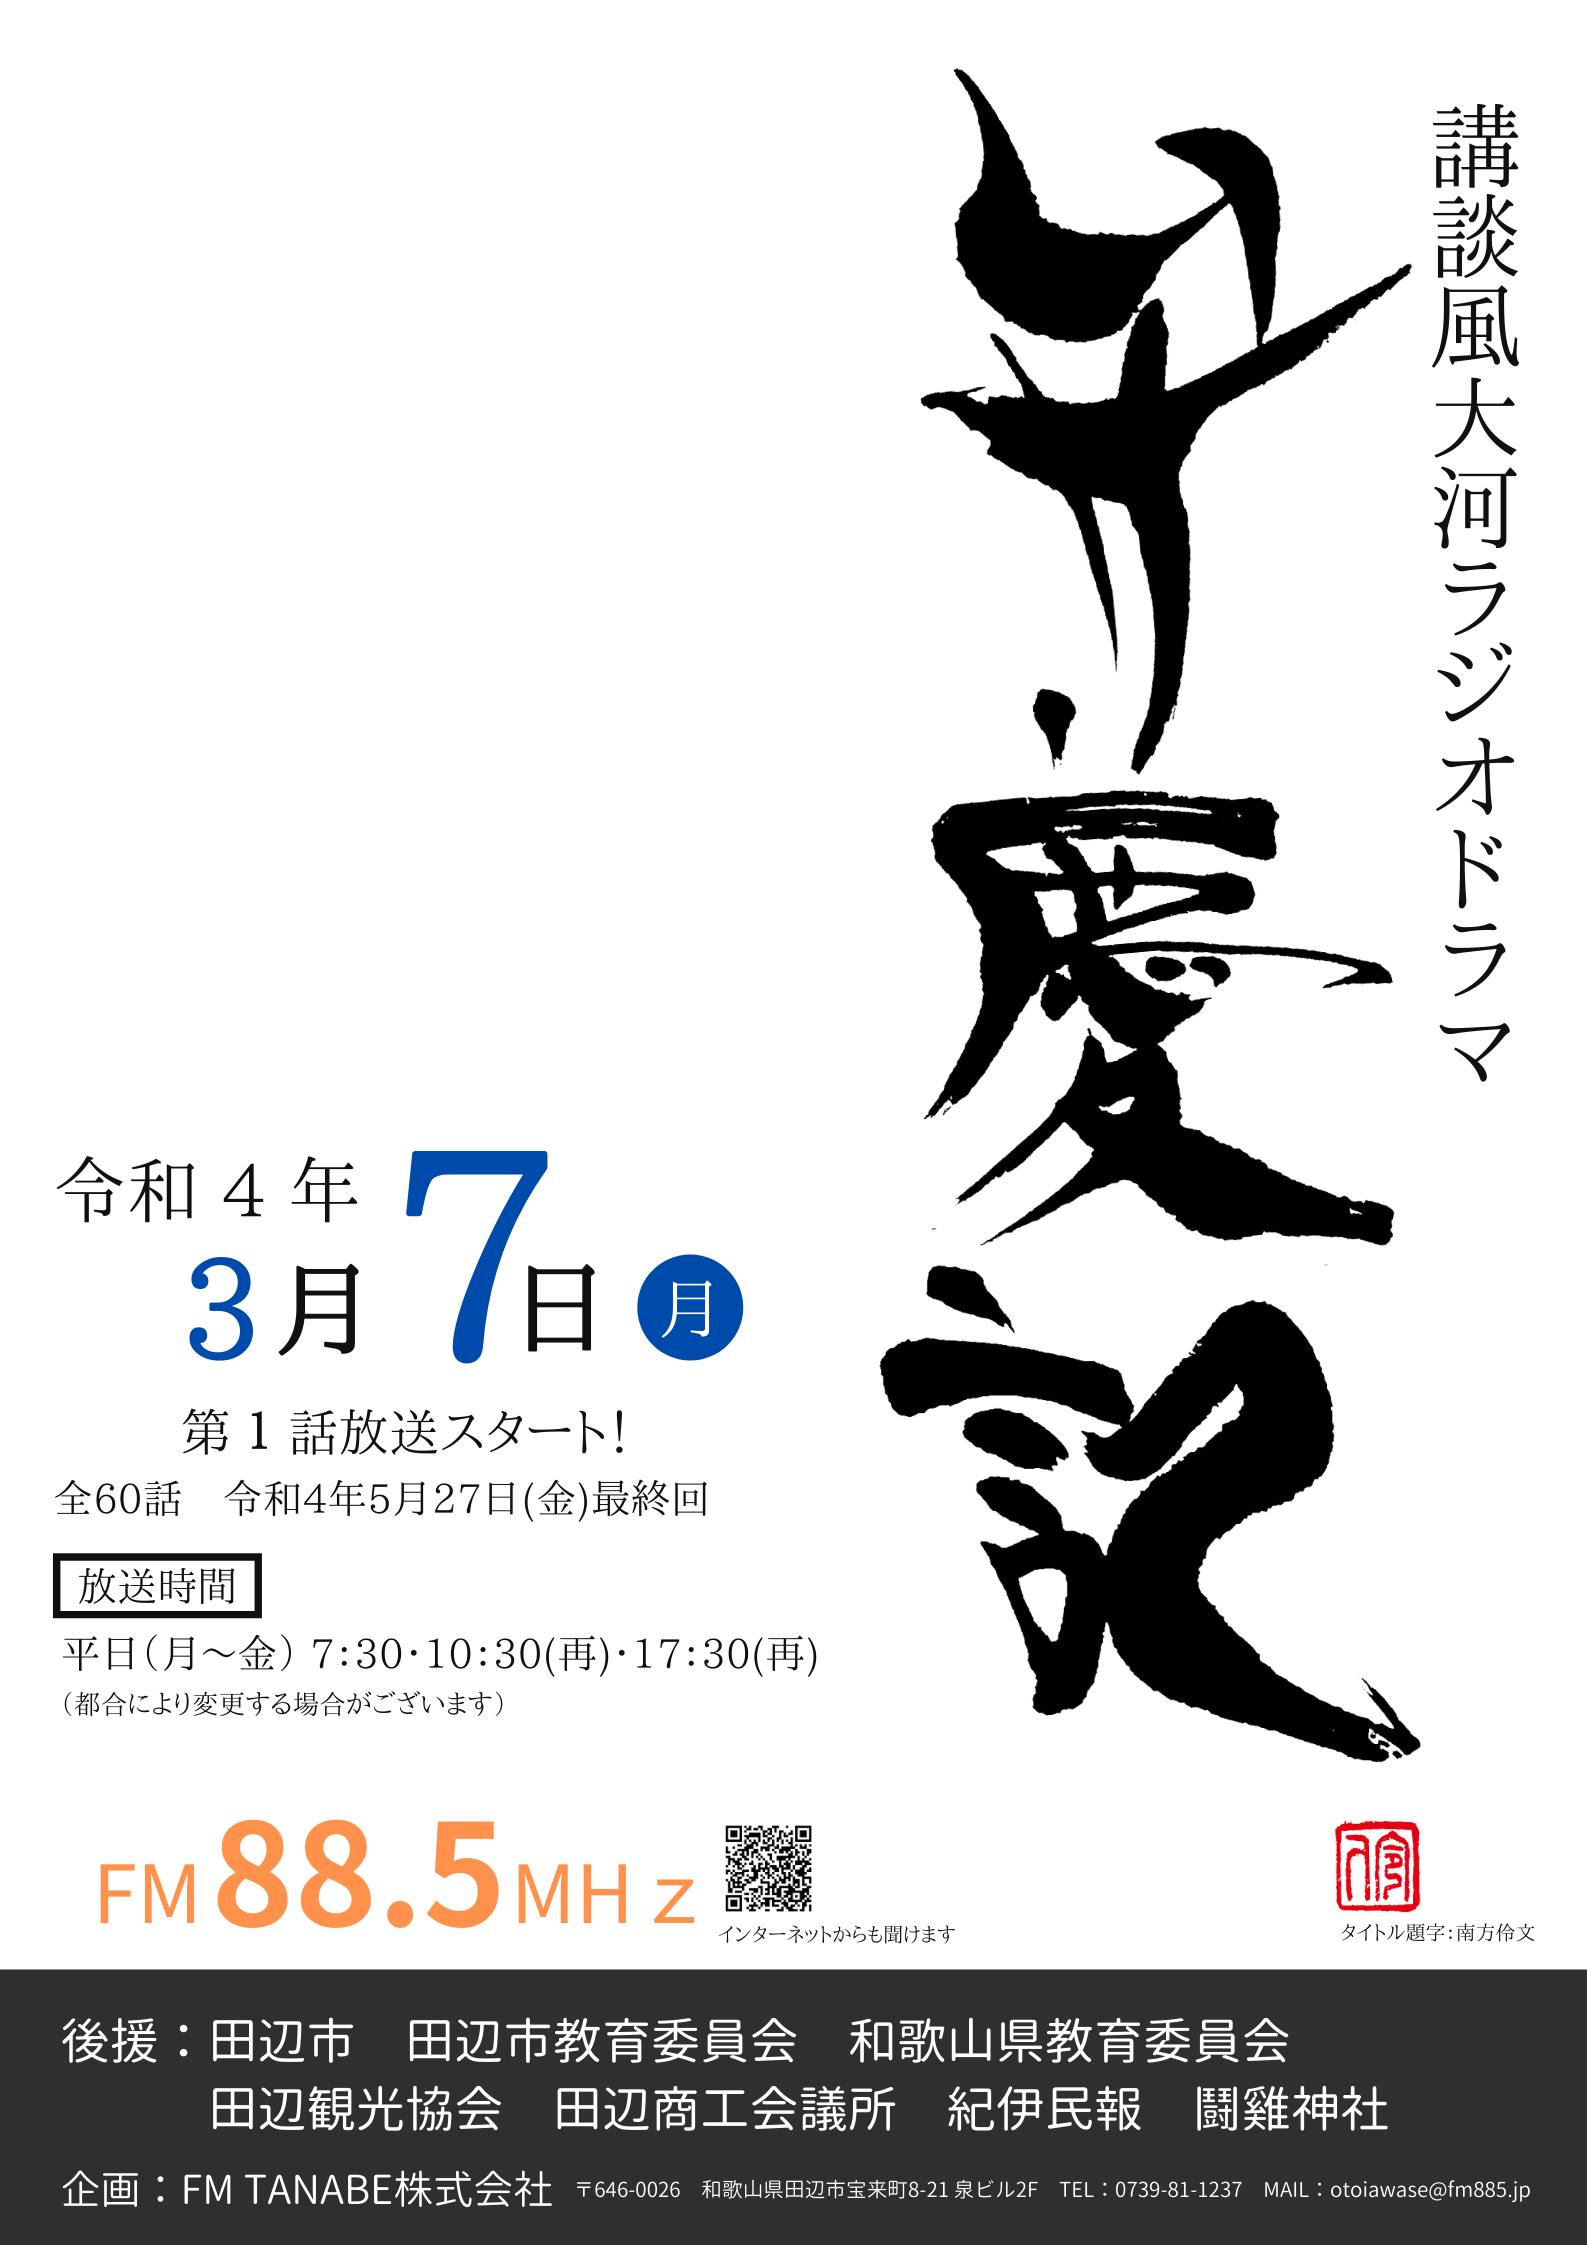 和歌山県田辺市の偉人 武蔵坊弁慶の生涯を描く講談ラジオドラマを地元から放送したい CAMPFIRE (キャンプファイヤー)